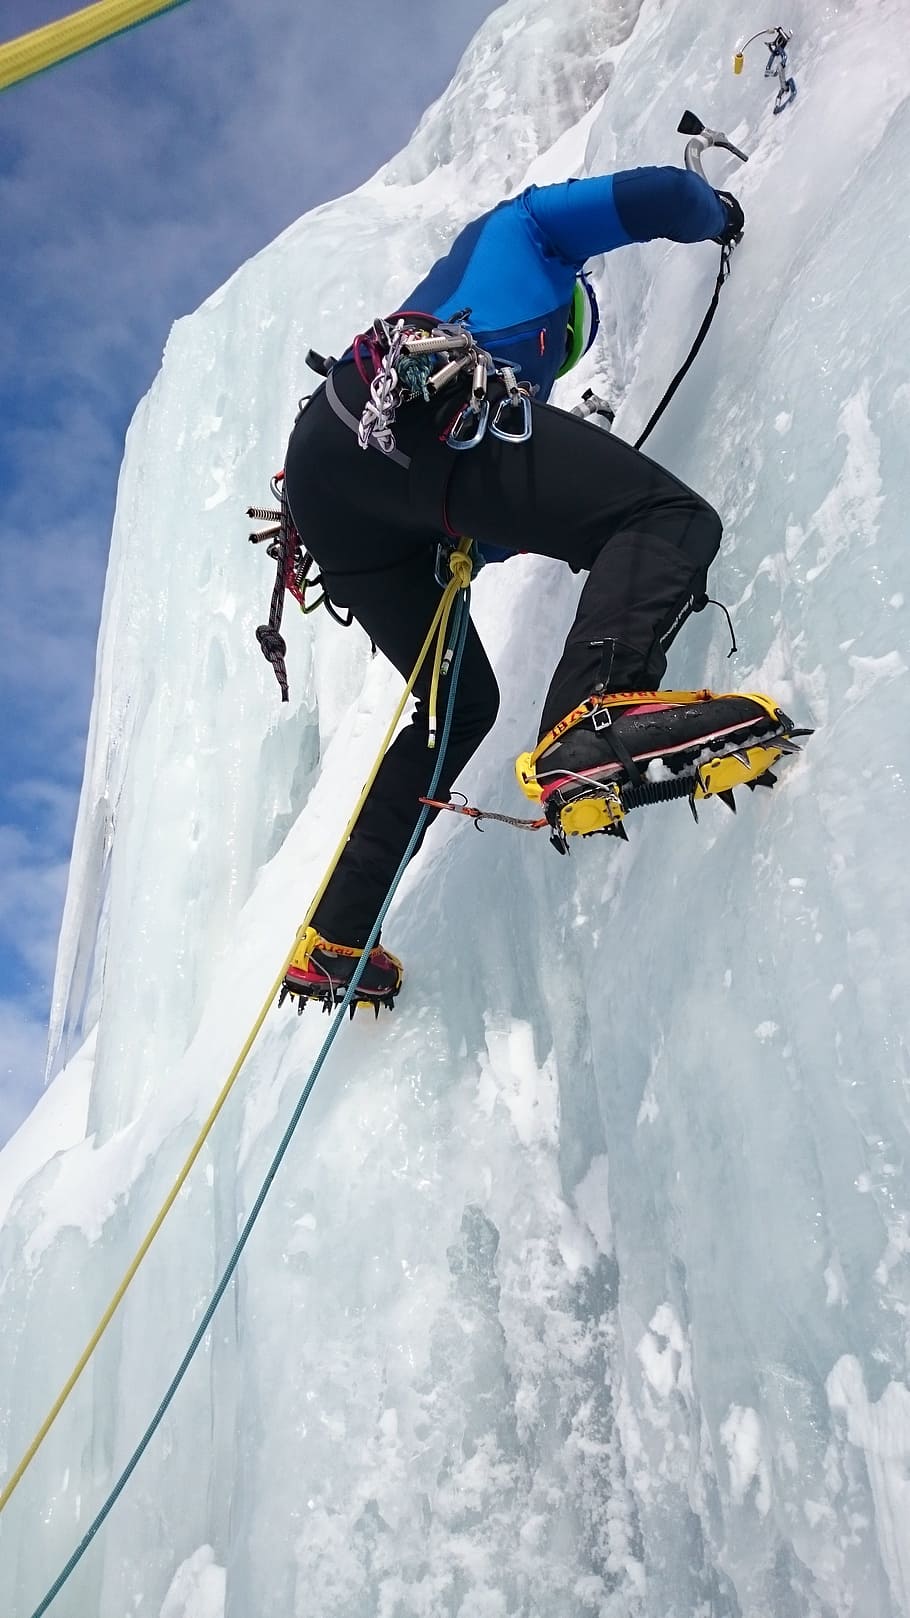 escaladores de hielo, escalada, hielo, escalada en hielo, cascada de hielo, congelados, deportes extremos, pared de hielo, escalada en plomo, tornillo de hielo